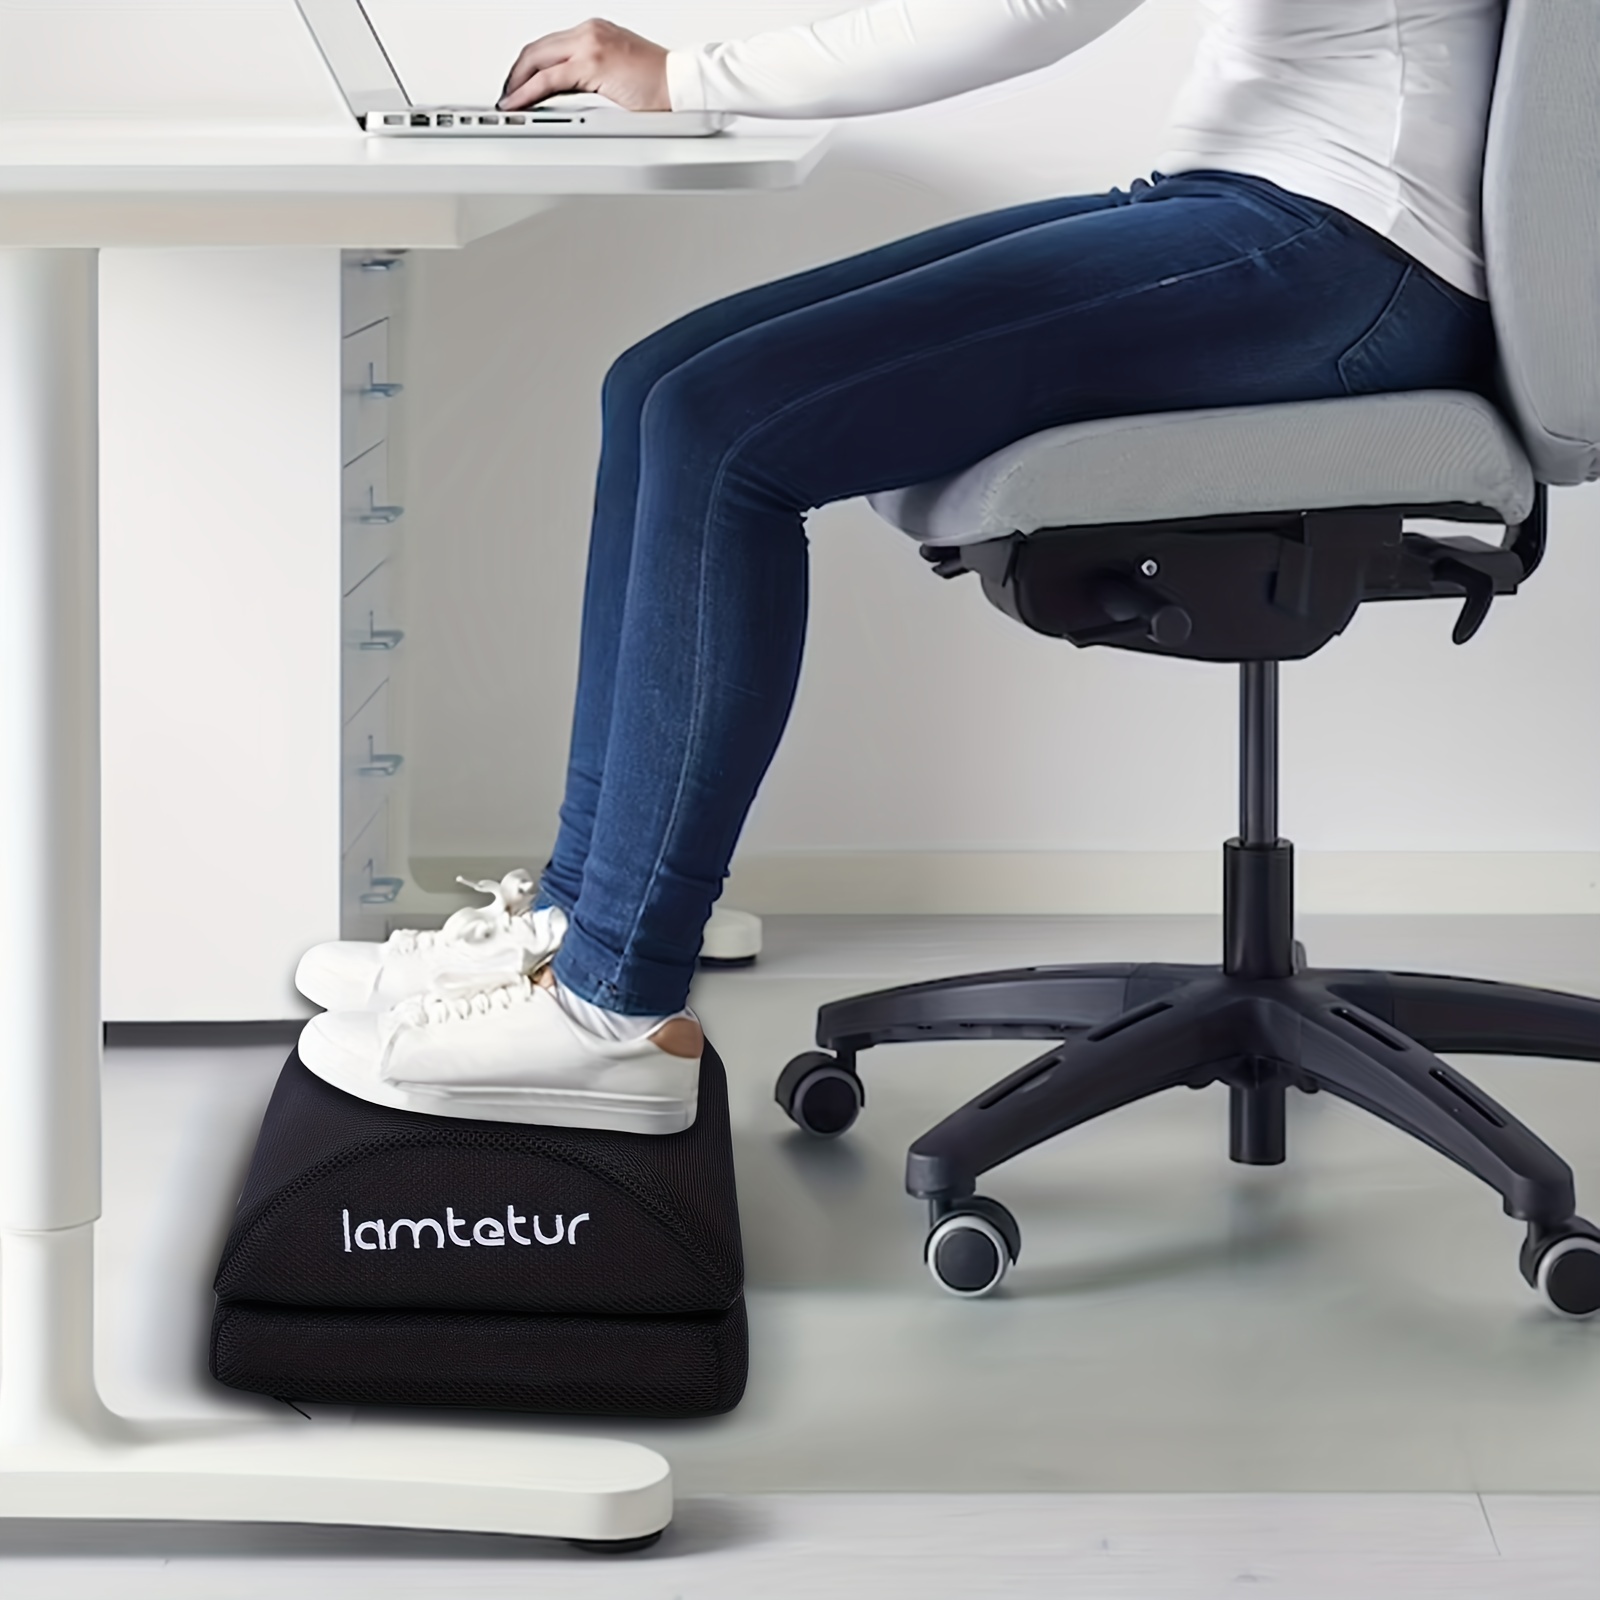 Memory Foam Foot Rest for Under Desk at Work,Office Desk